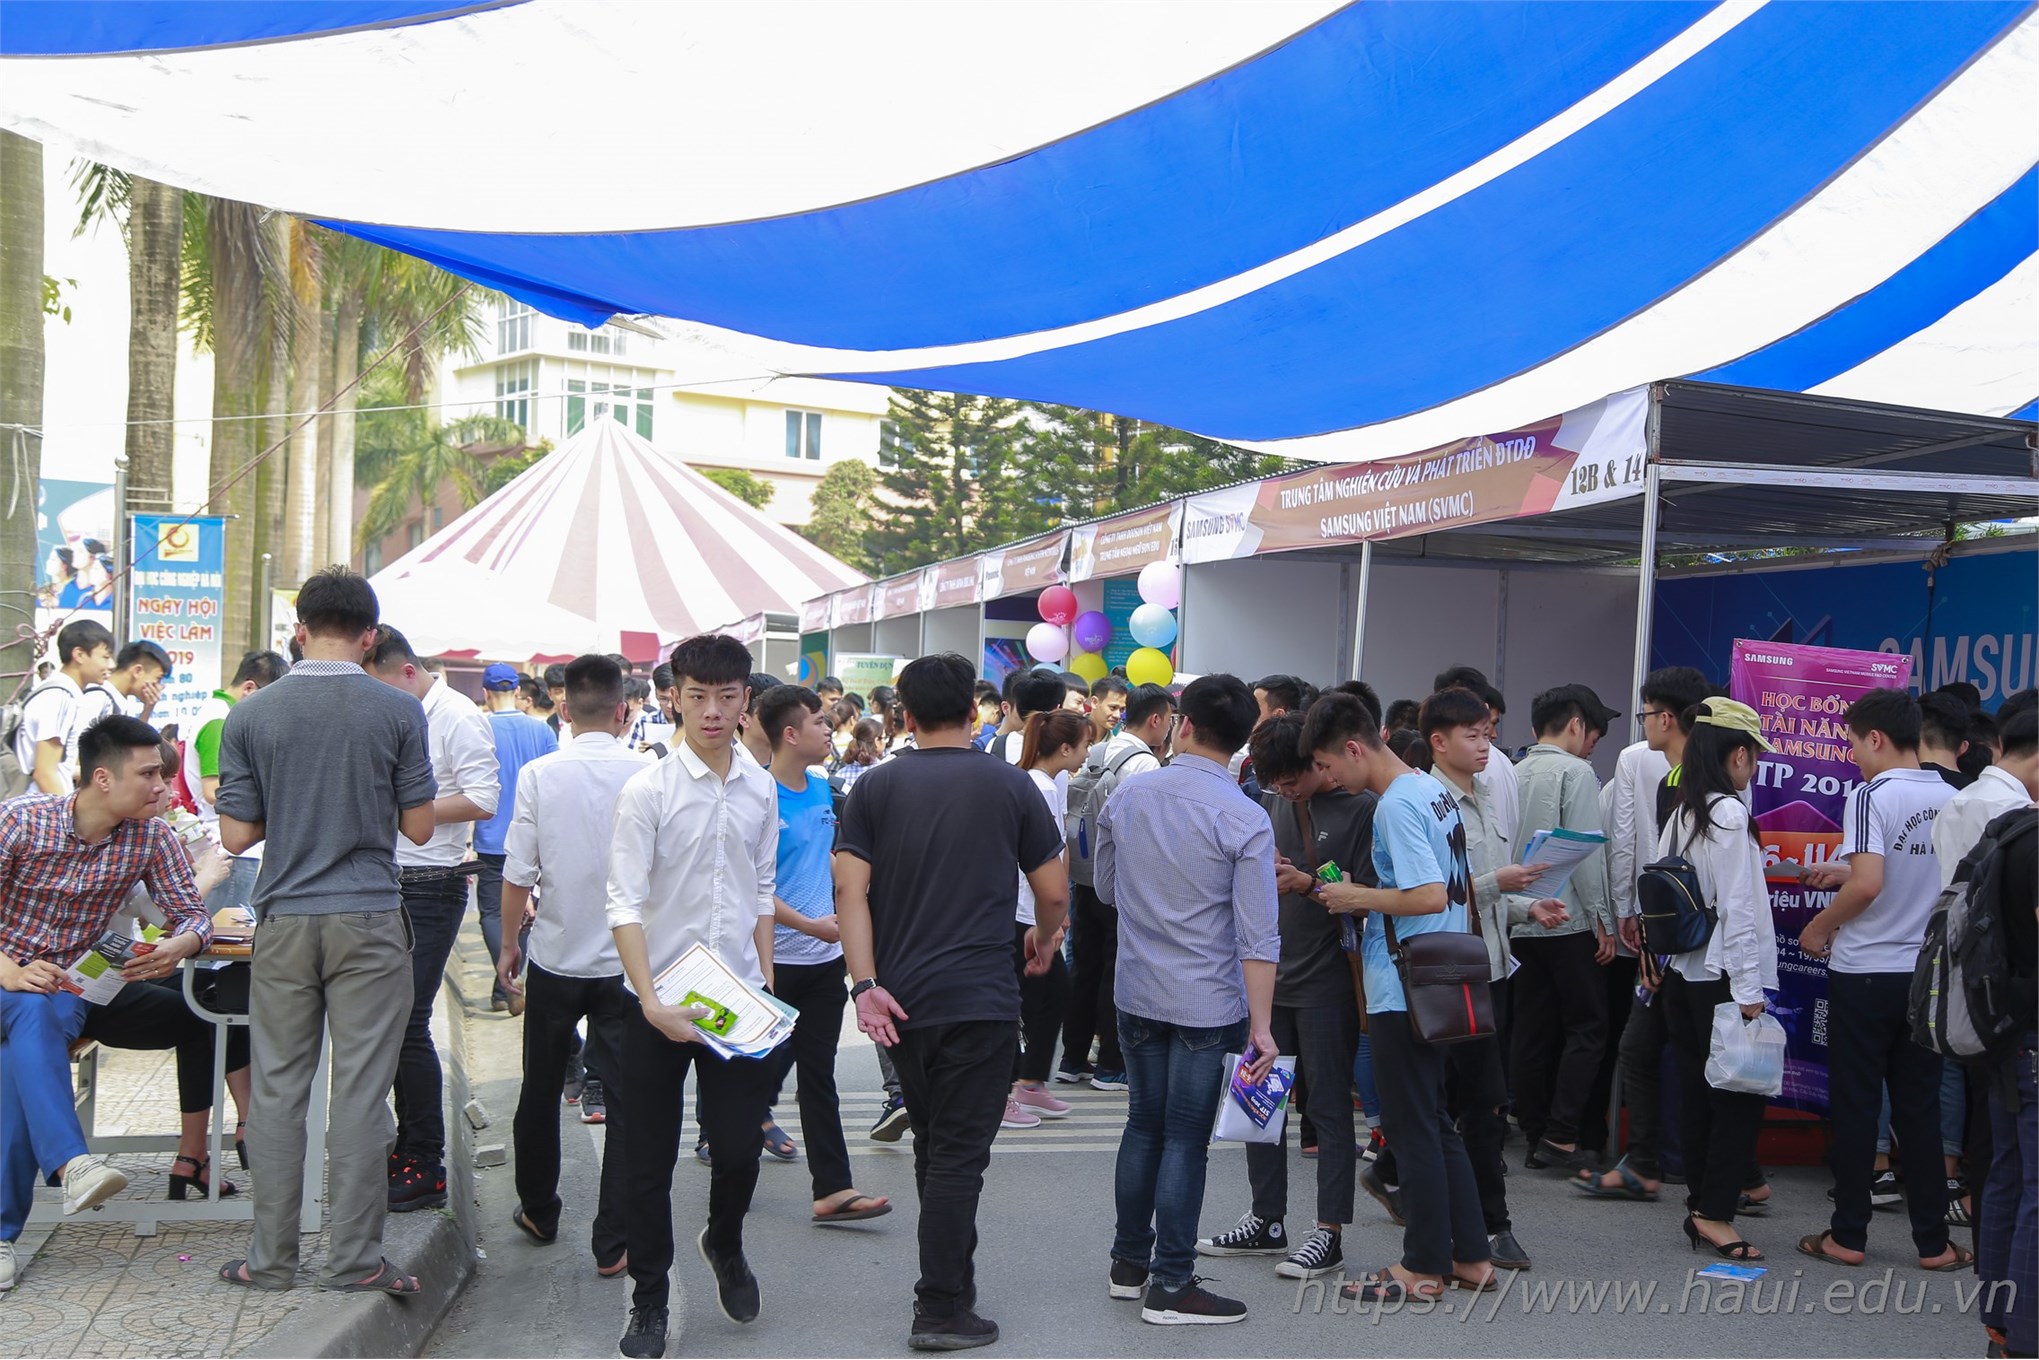 Đại học Công nghiệp Hà Nội tổ chức Ngày hội việc làm với gần 10.000 cơ hội việc làm cho sinh viên